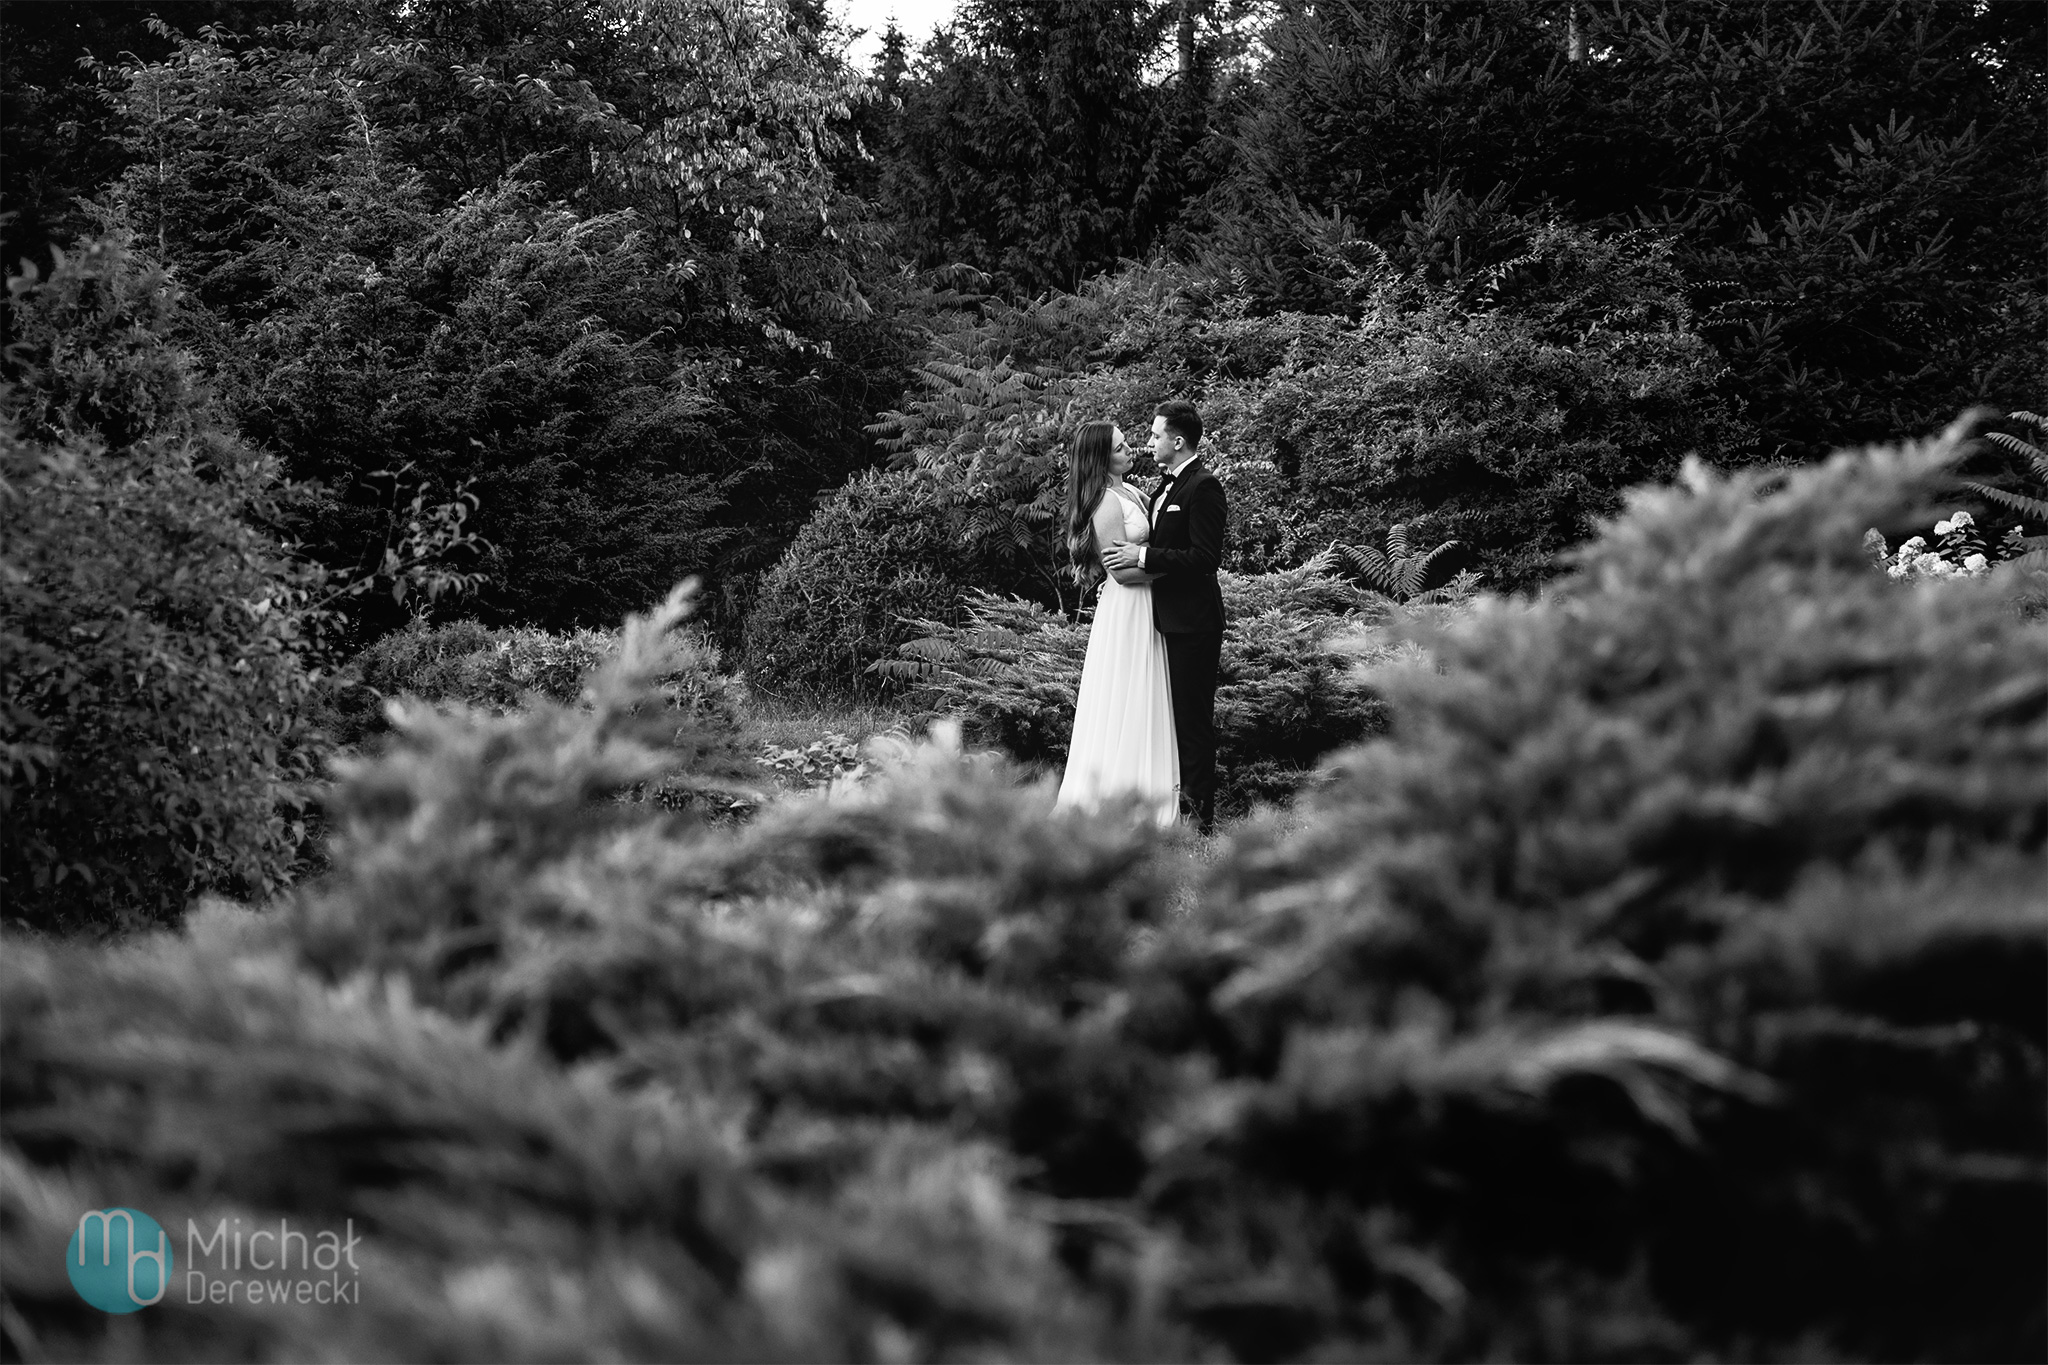 zdjęcia poślubne w lesie